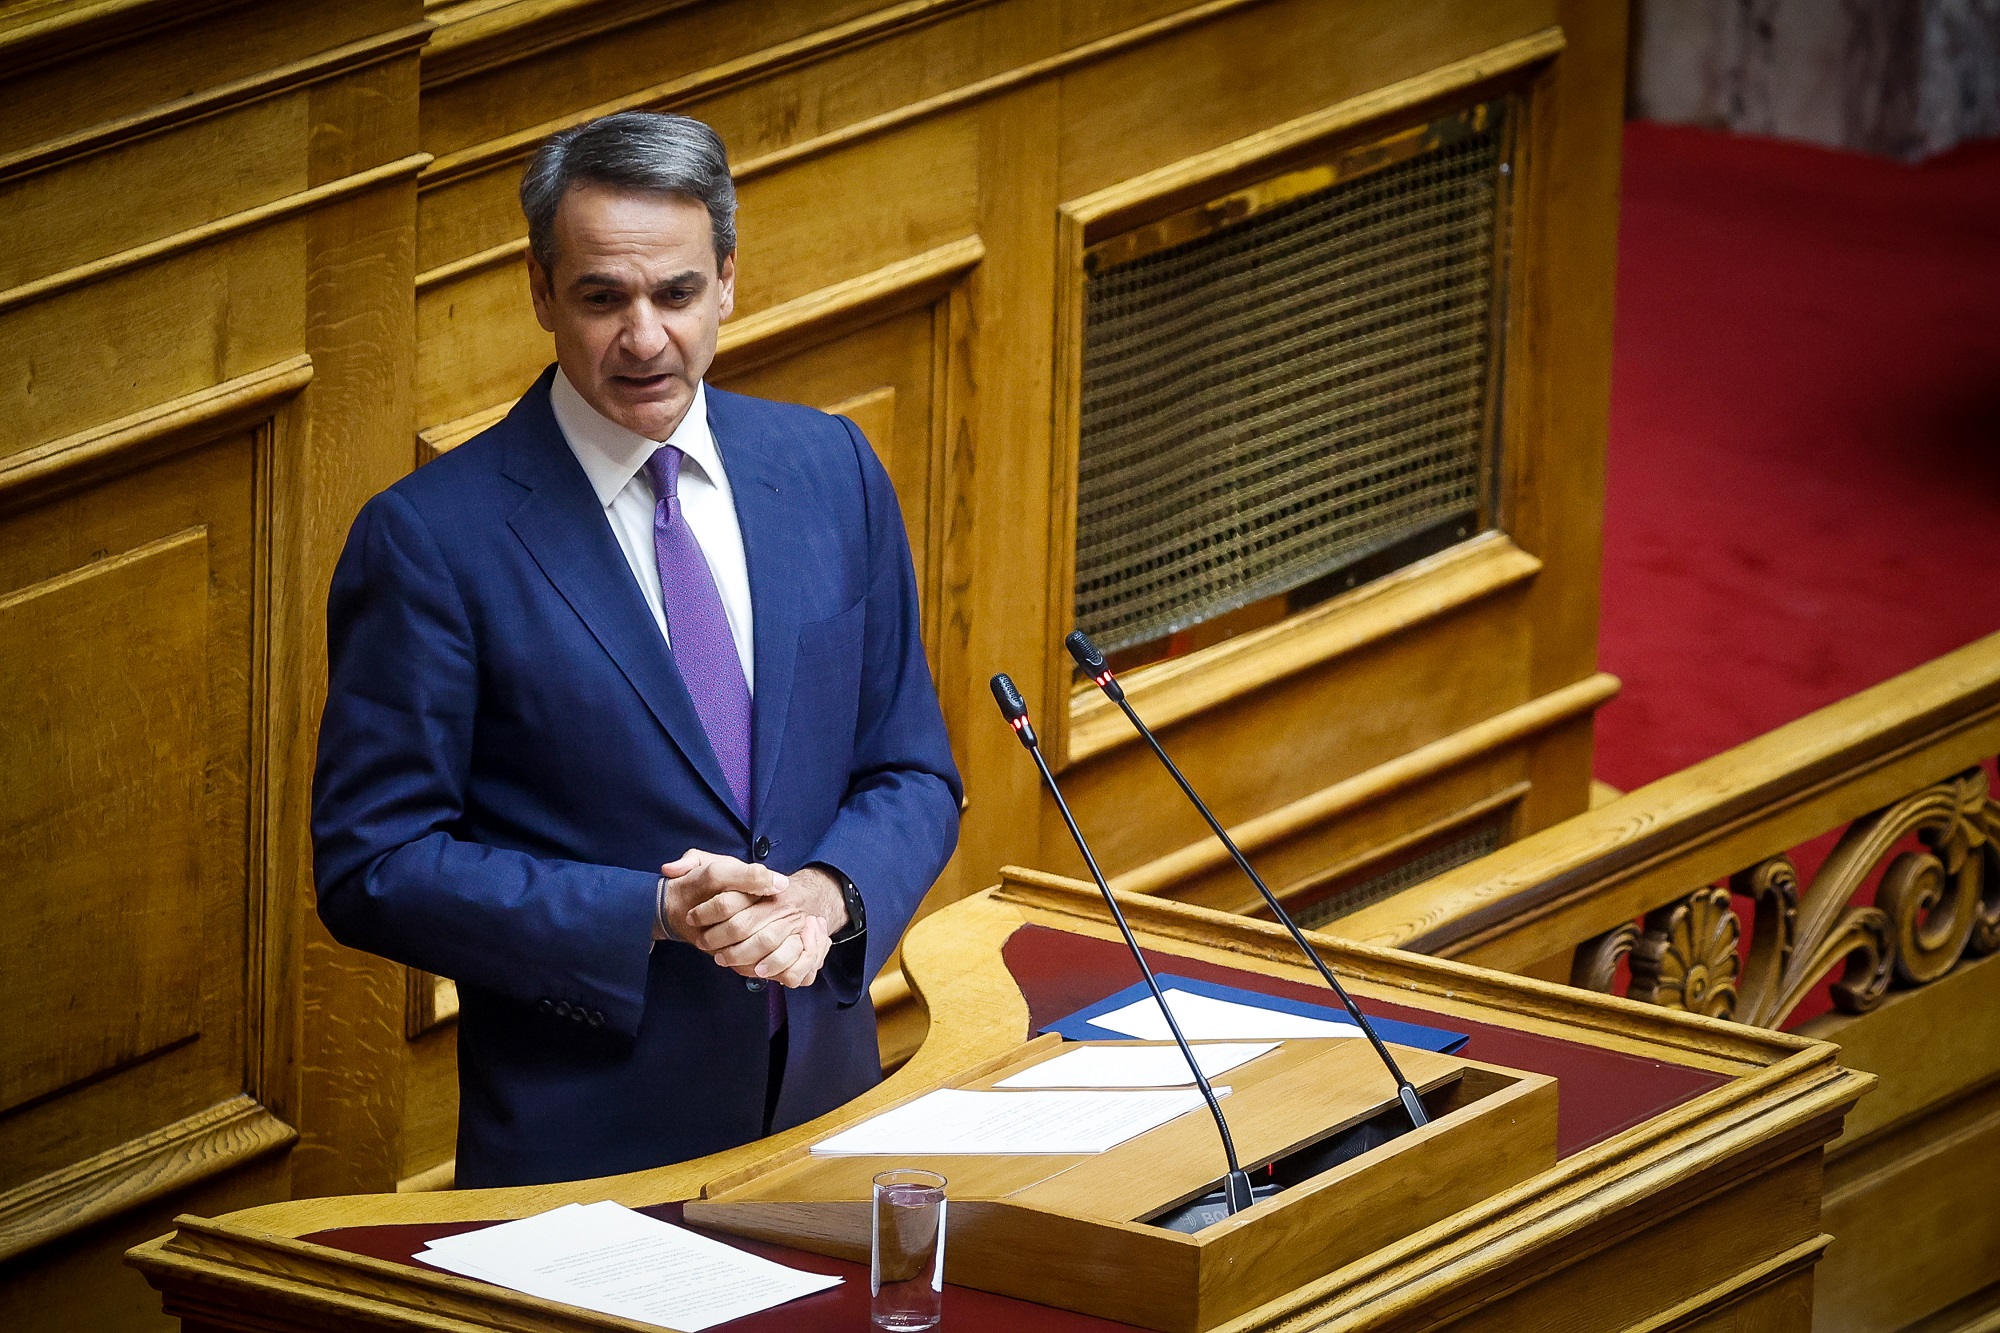 Σε δημόσια διαβούλευση από αύριο Δευτέρα το ν/σ για τους Έλληνες του εξωτερικού – Το χρονοδιάγραμμα